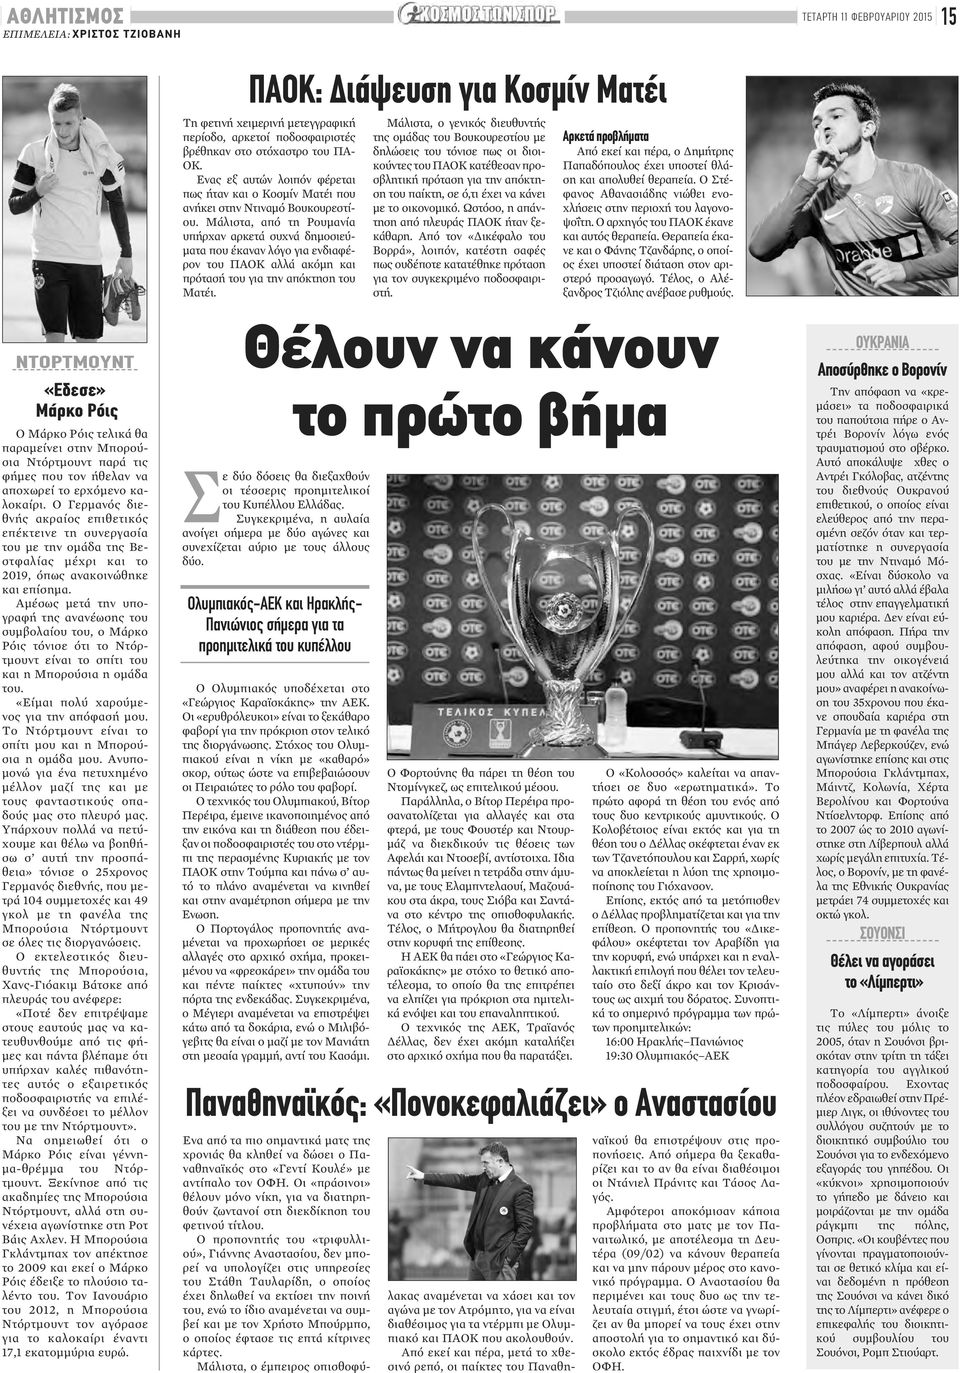 Μάλιστα, από τη Ρουμανία υπήρχαν αρκετά συχνά δημοσιεύματα που έκαναν λόγο για ενδιαφέρον του ΠΑΟΚ αλλά ακόμη και πρότασή του για την απόκτηση του Ματέι.